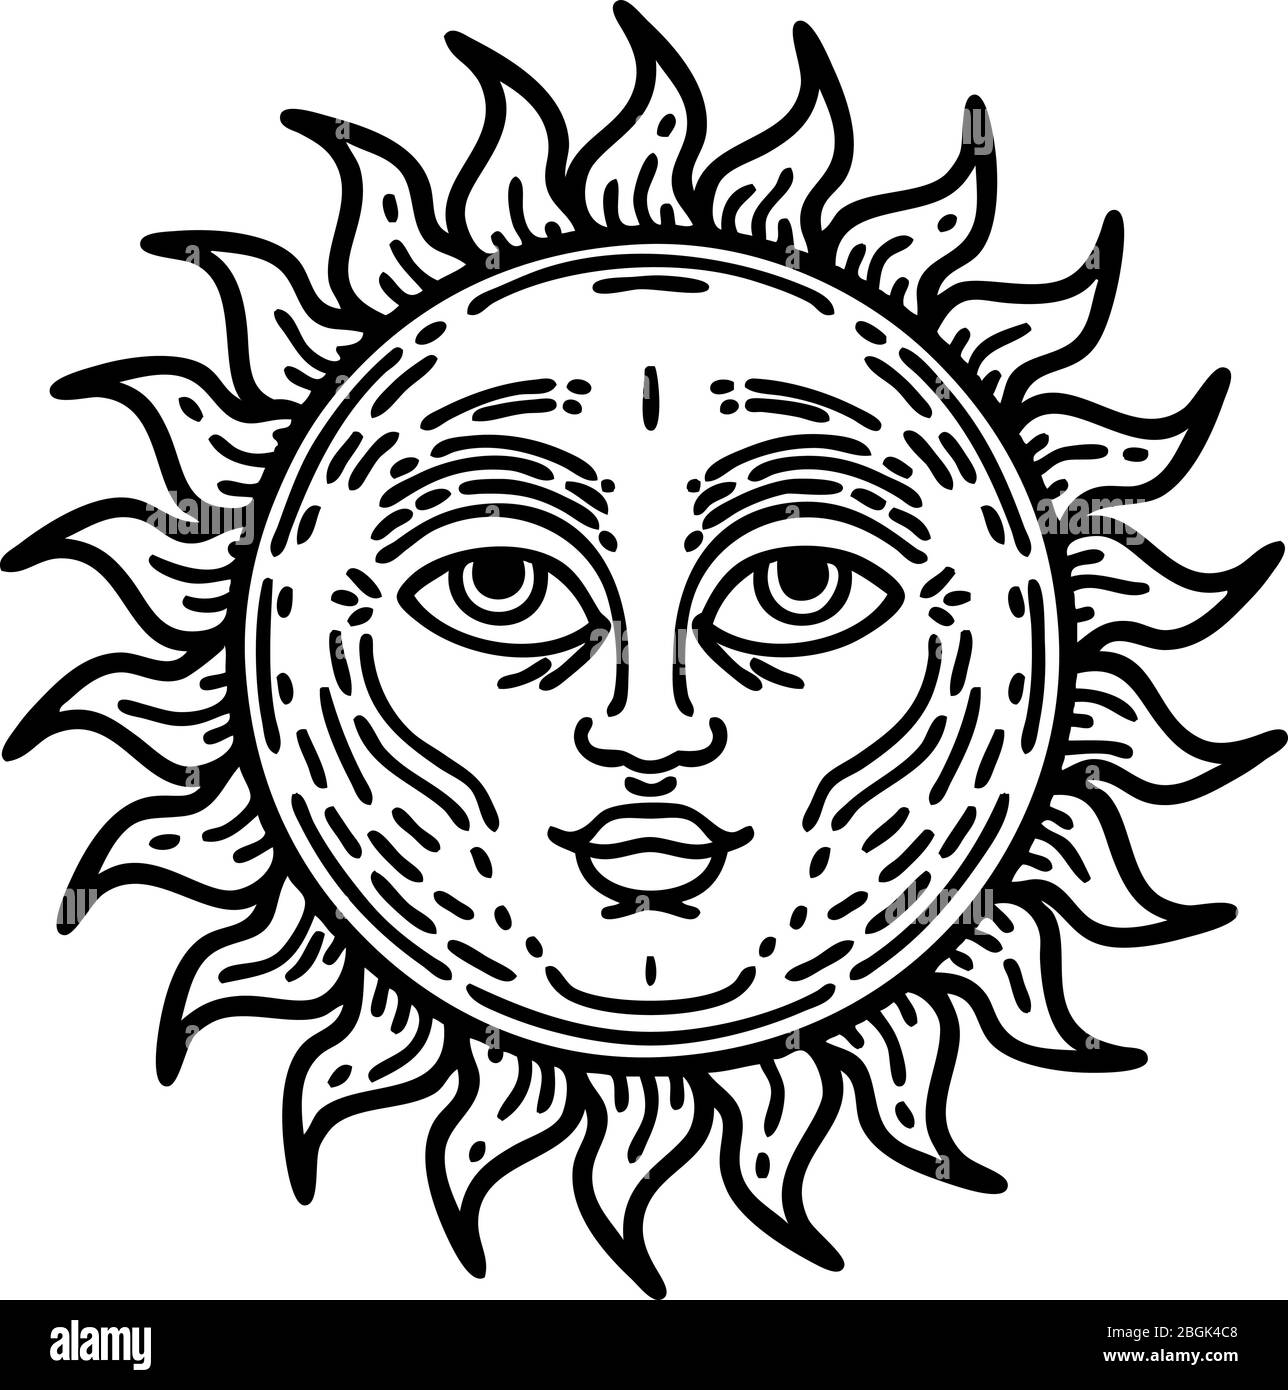 Cloudy Sun Tattoo Design  Cloudy Sun  Coyote Tattoo Designs